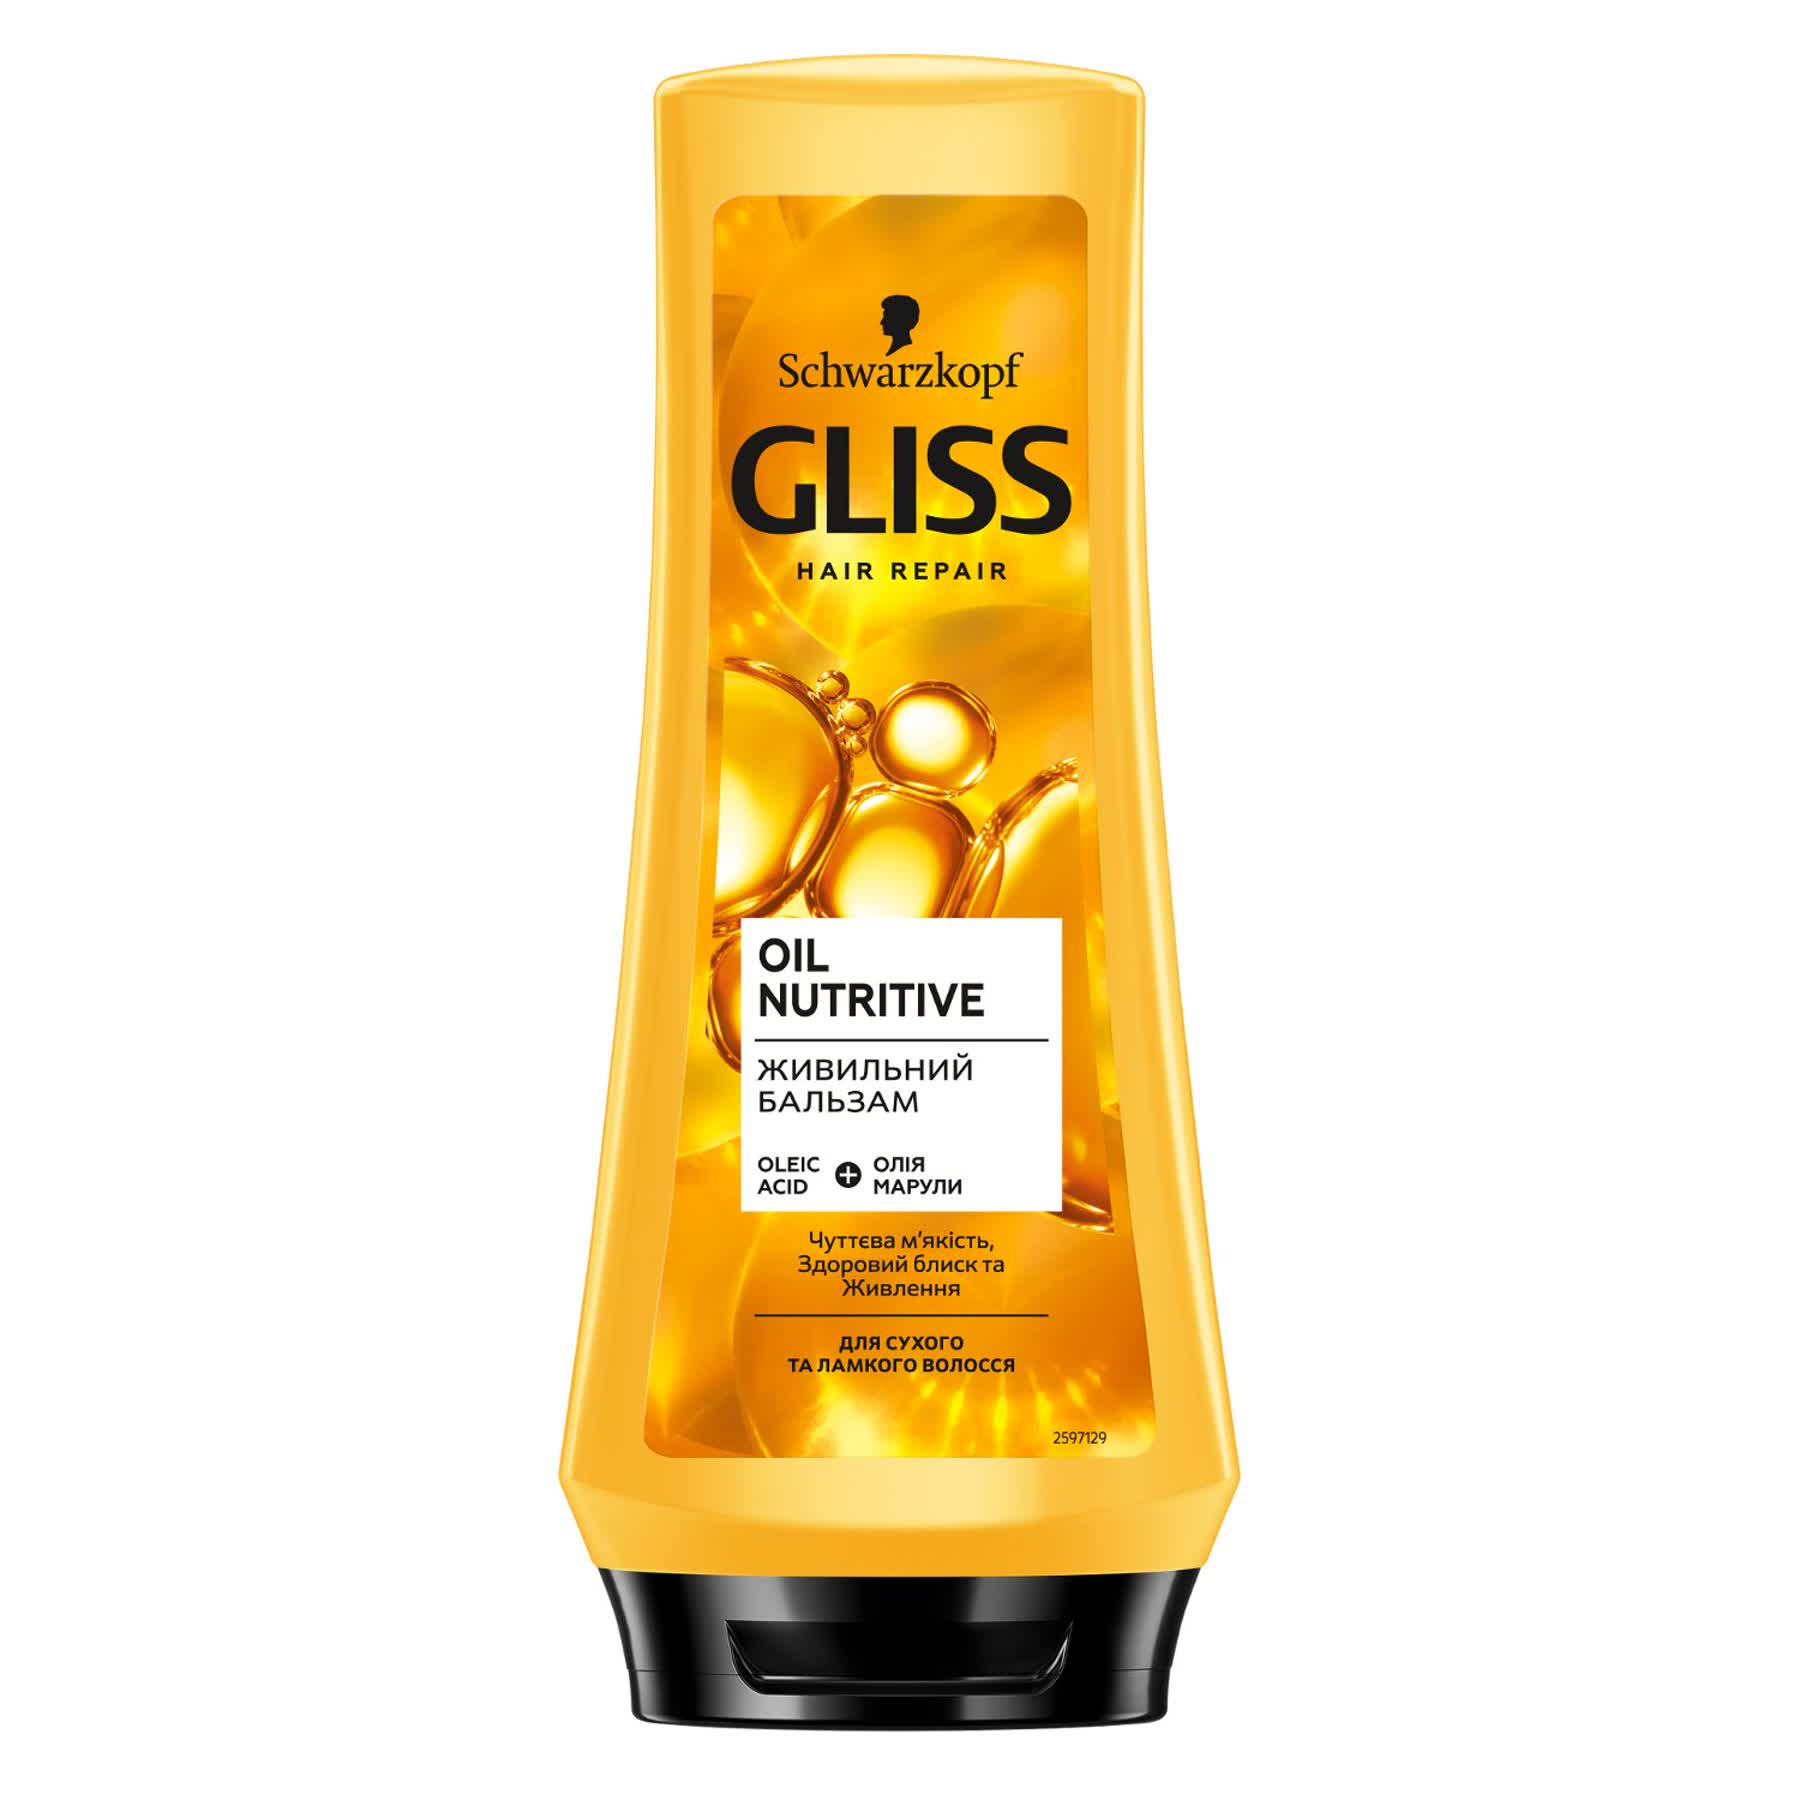 Бальзам Gliss Oil Nutritive для секущихся волос, 200 мл - фото 1